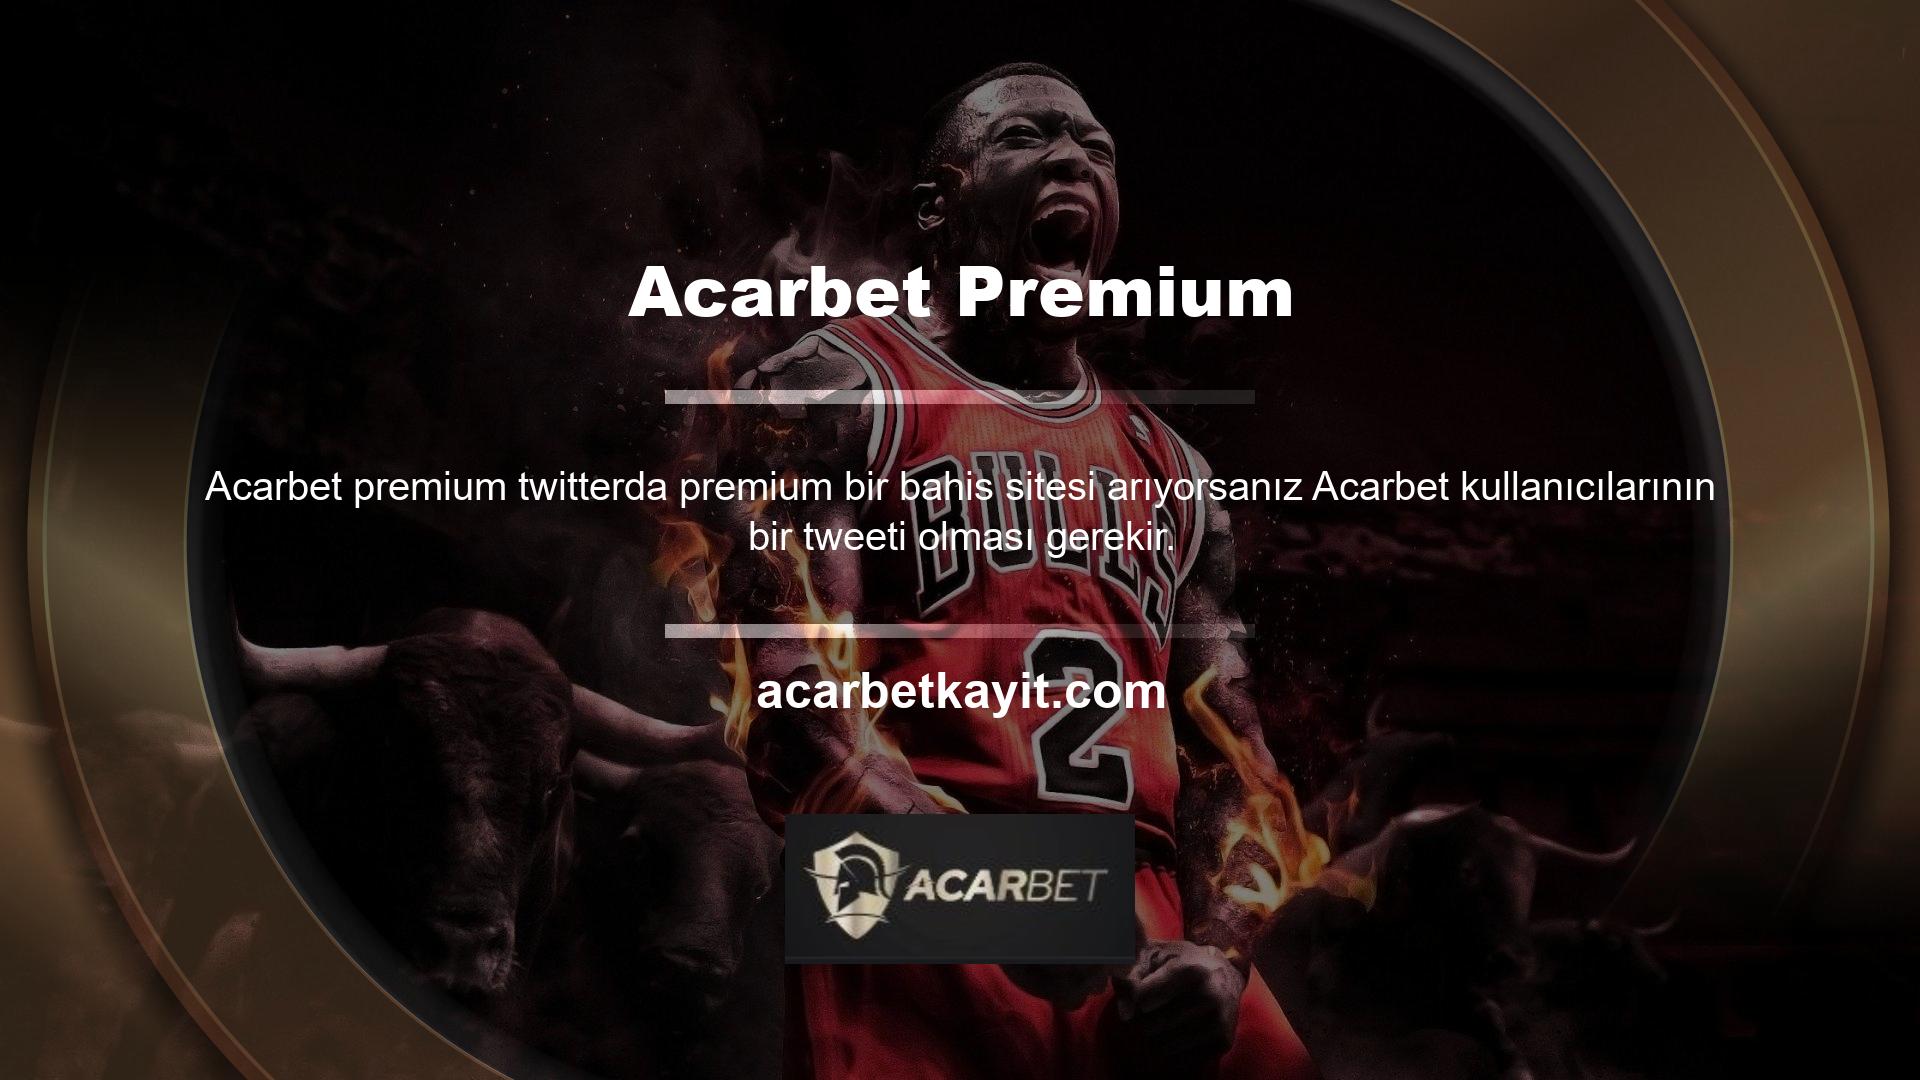 Acarbet Twitterı, üyelerine eksiksiz hizmetler sunan çok yönlü bir çevrimiçi oyun hizmetidir